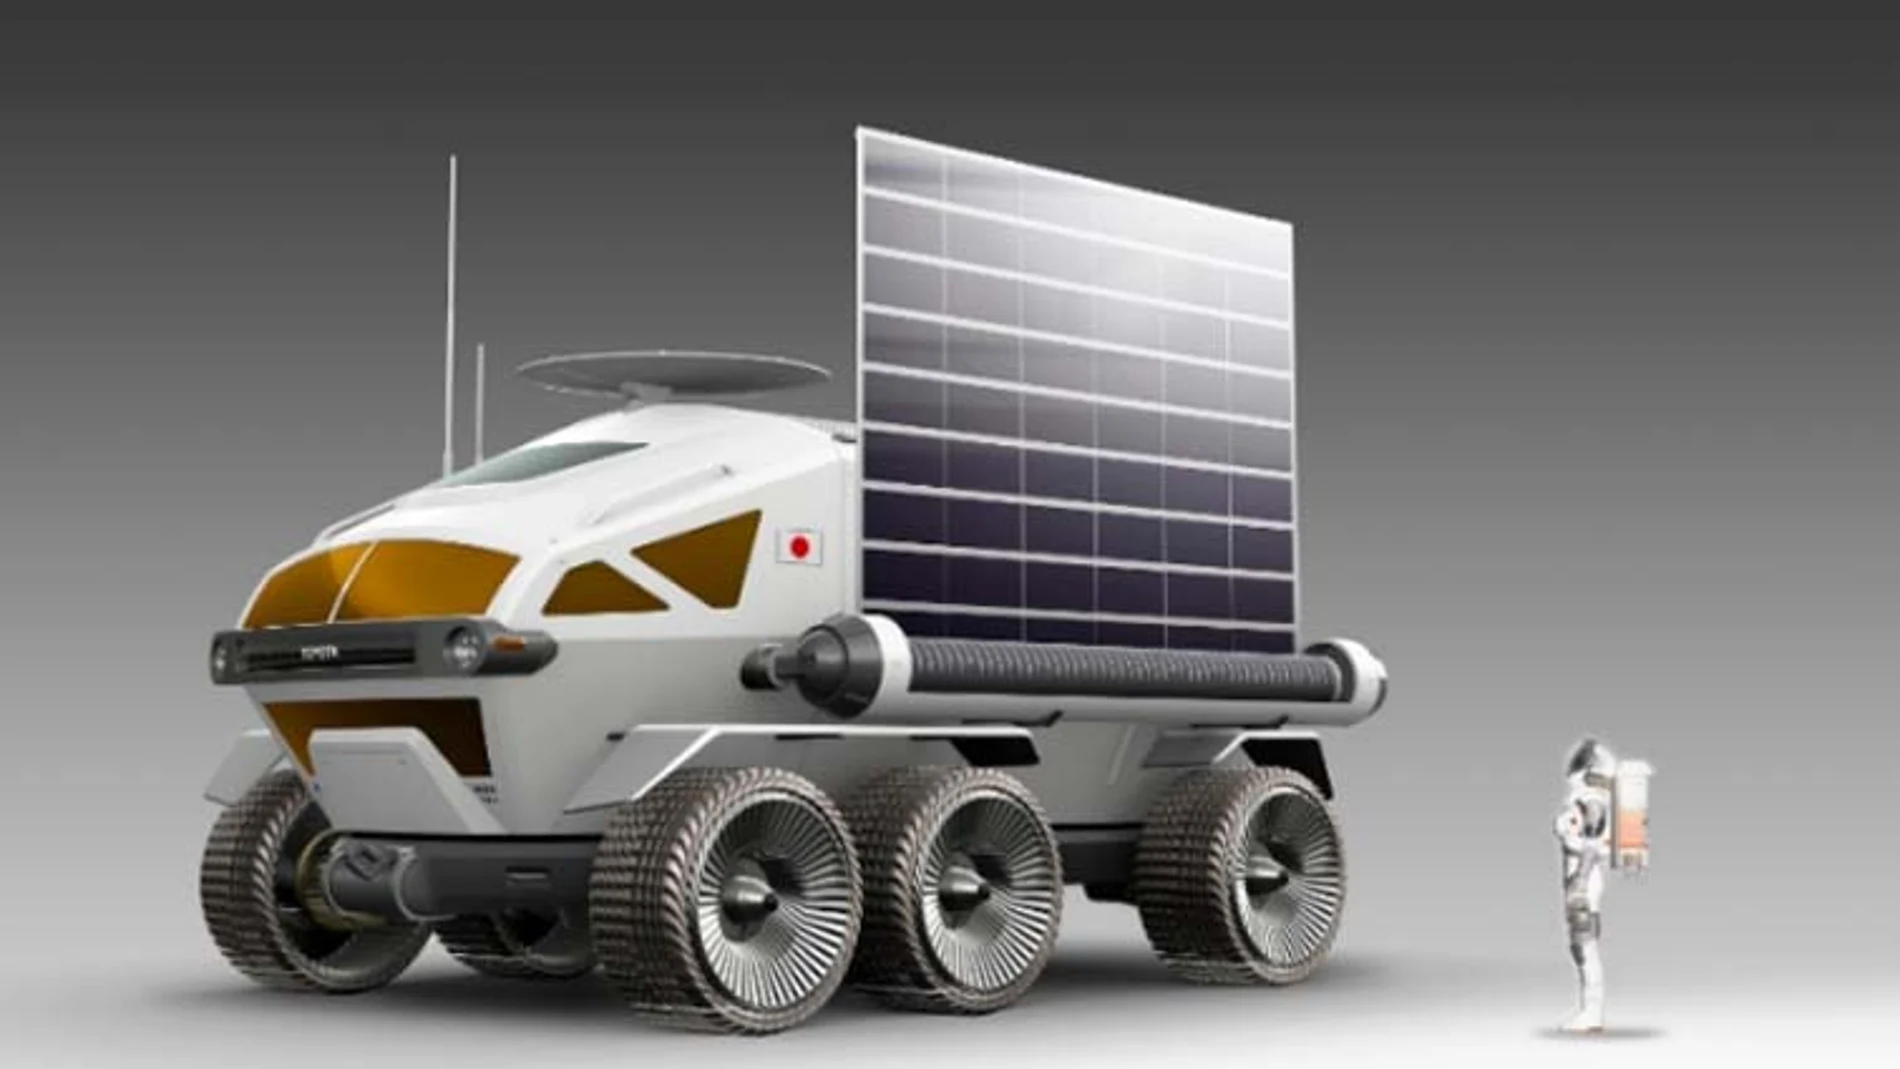 El prototipo de vehículo espacial desarrollado por Toyota calzará ruedas Bridgestone.